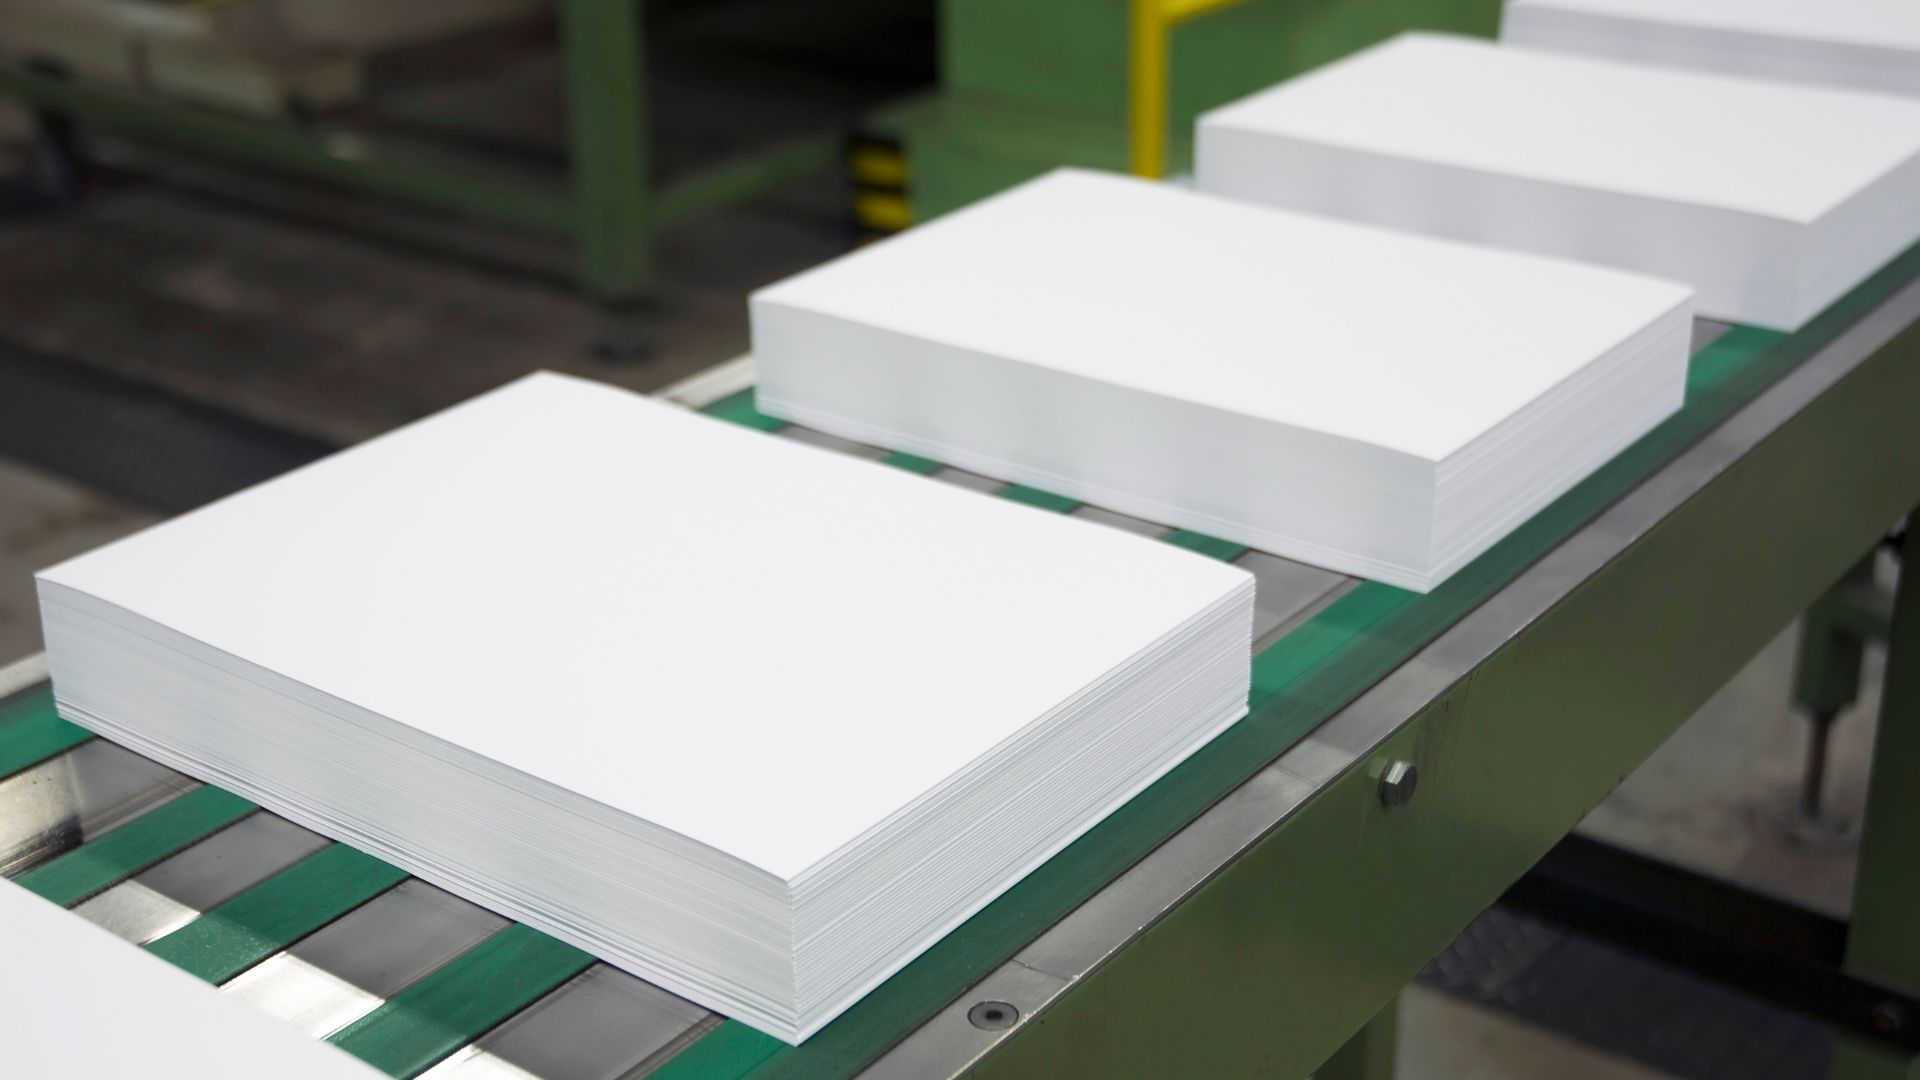 processo de fabricação do papel